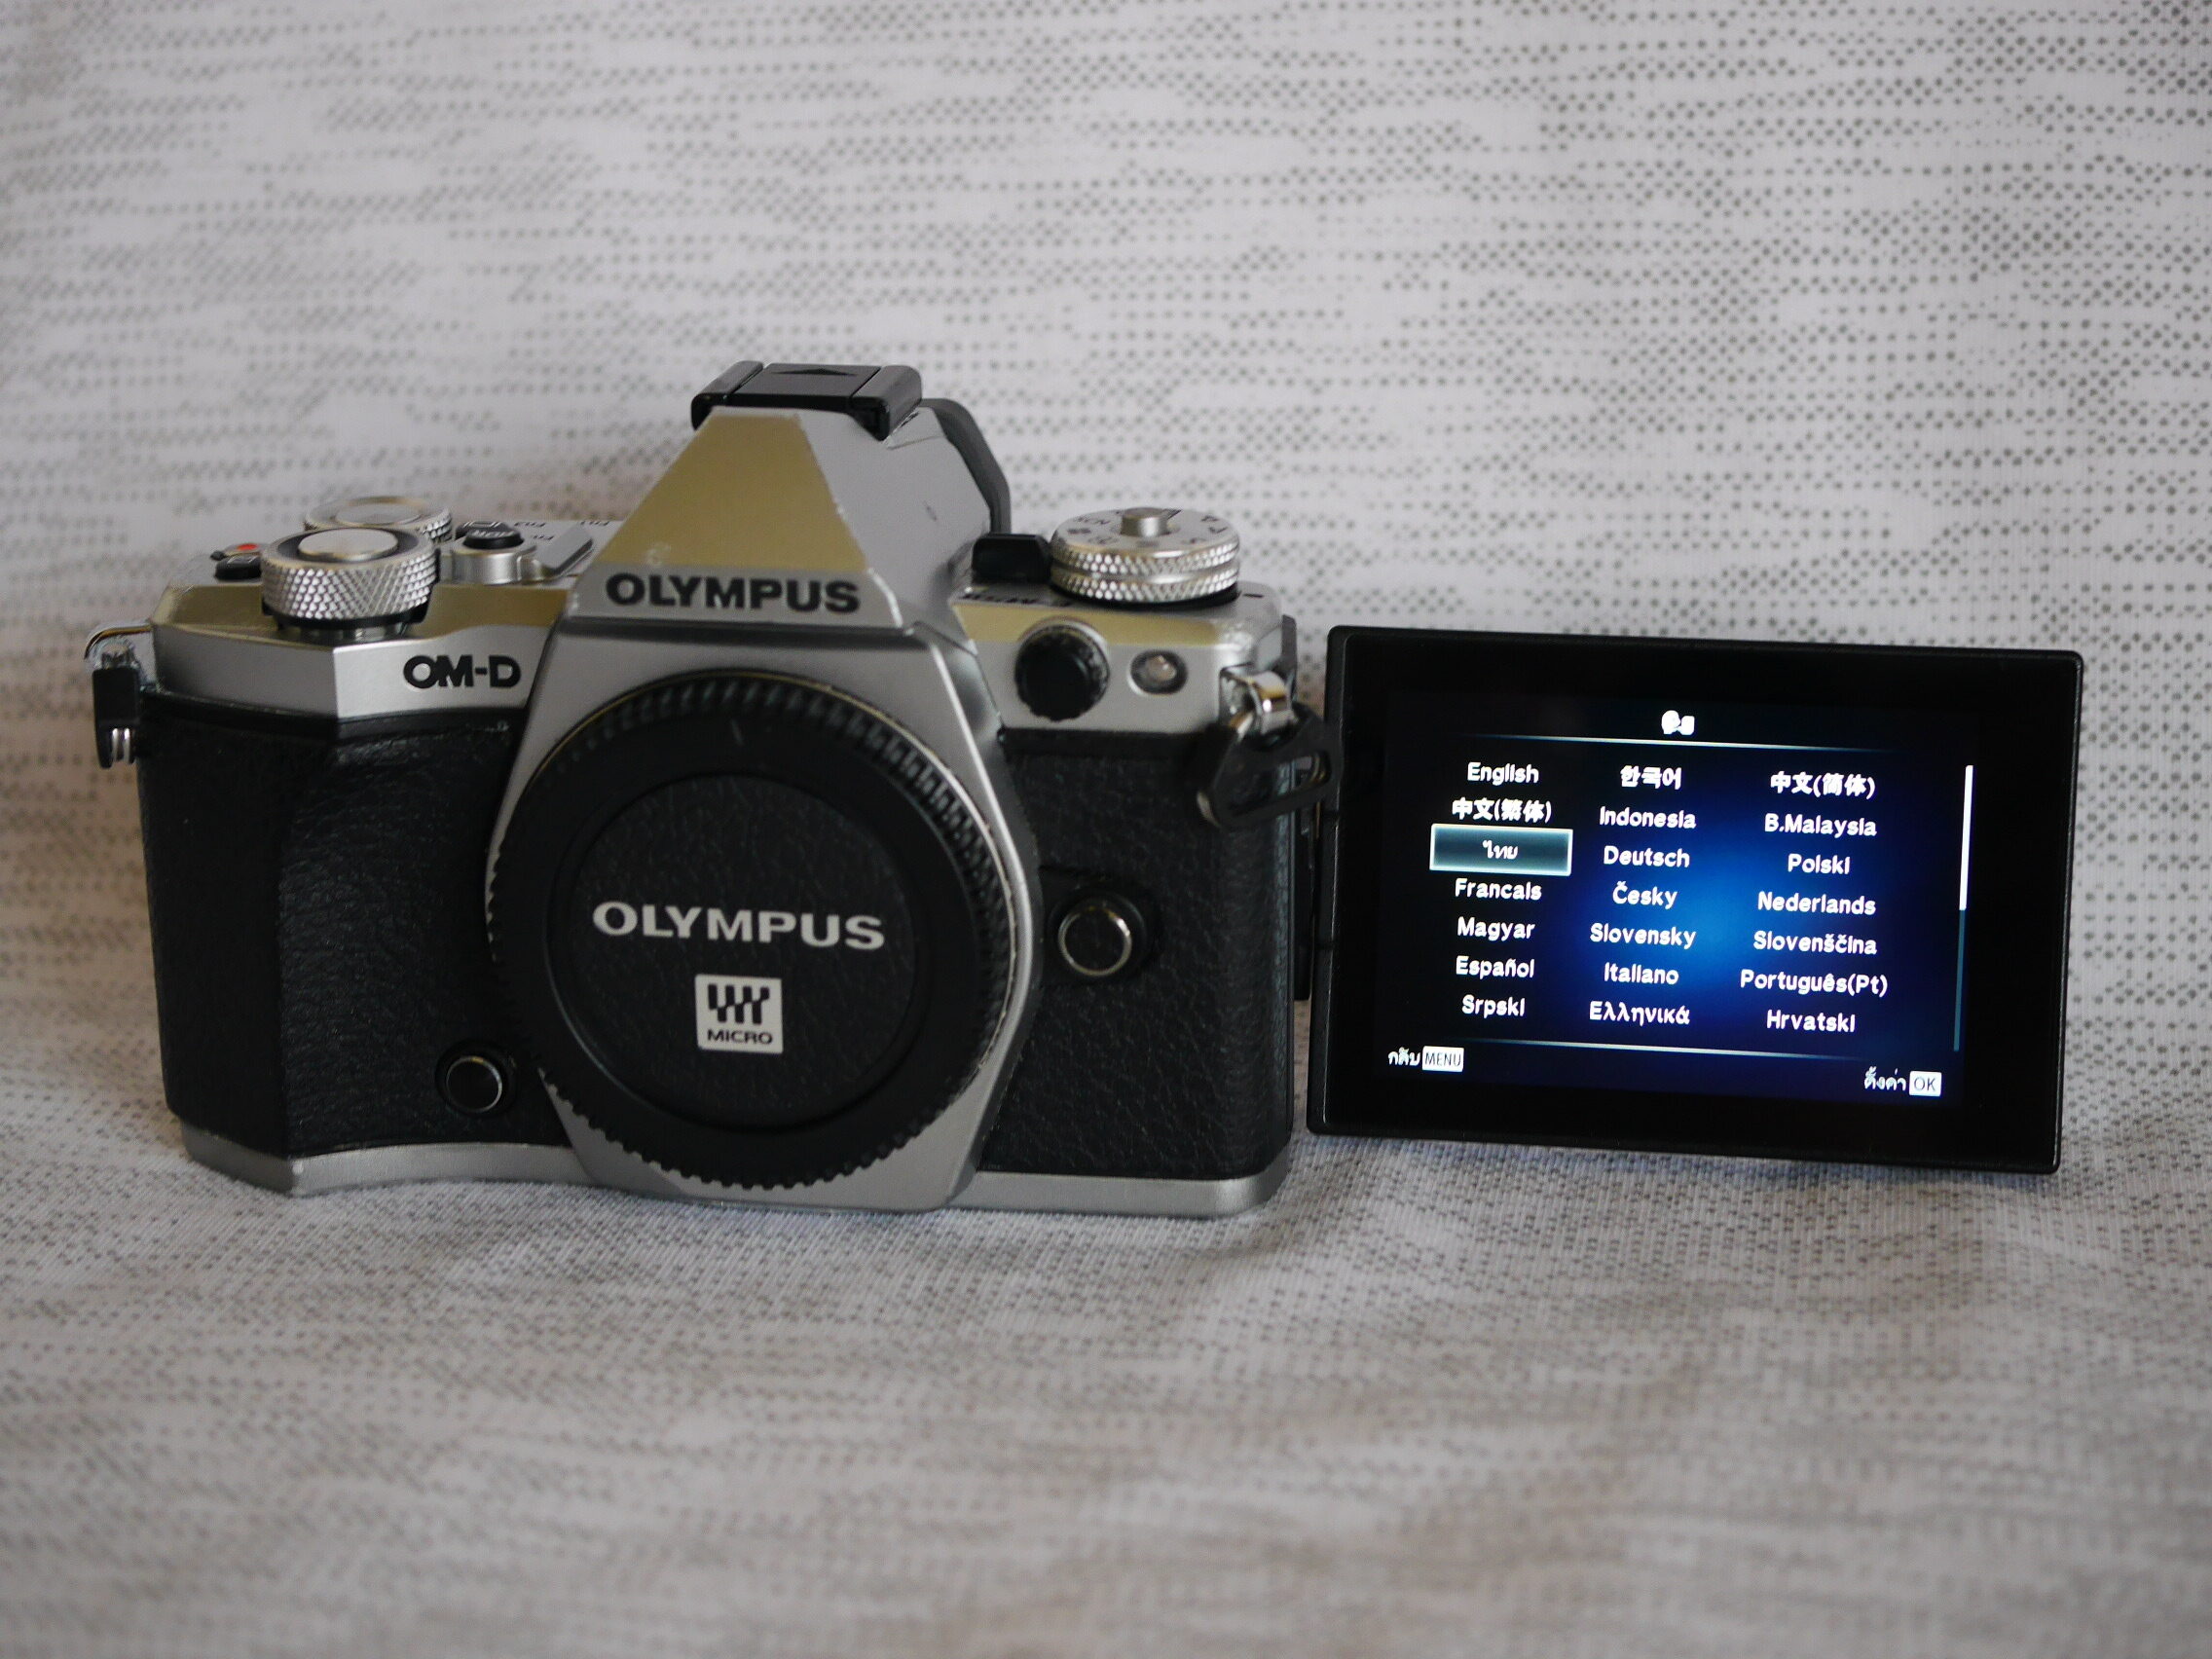 Olympus OM-D E-M5 Mark II Digital Camera Black Silver Body in Box, OMD EM5 Mark 2, O-MD EM-5